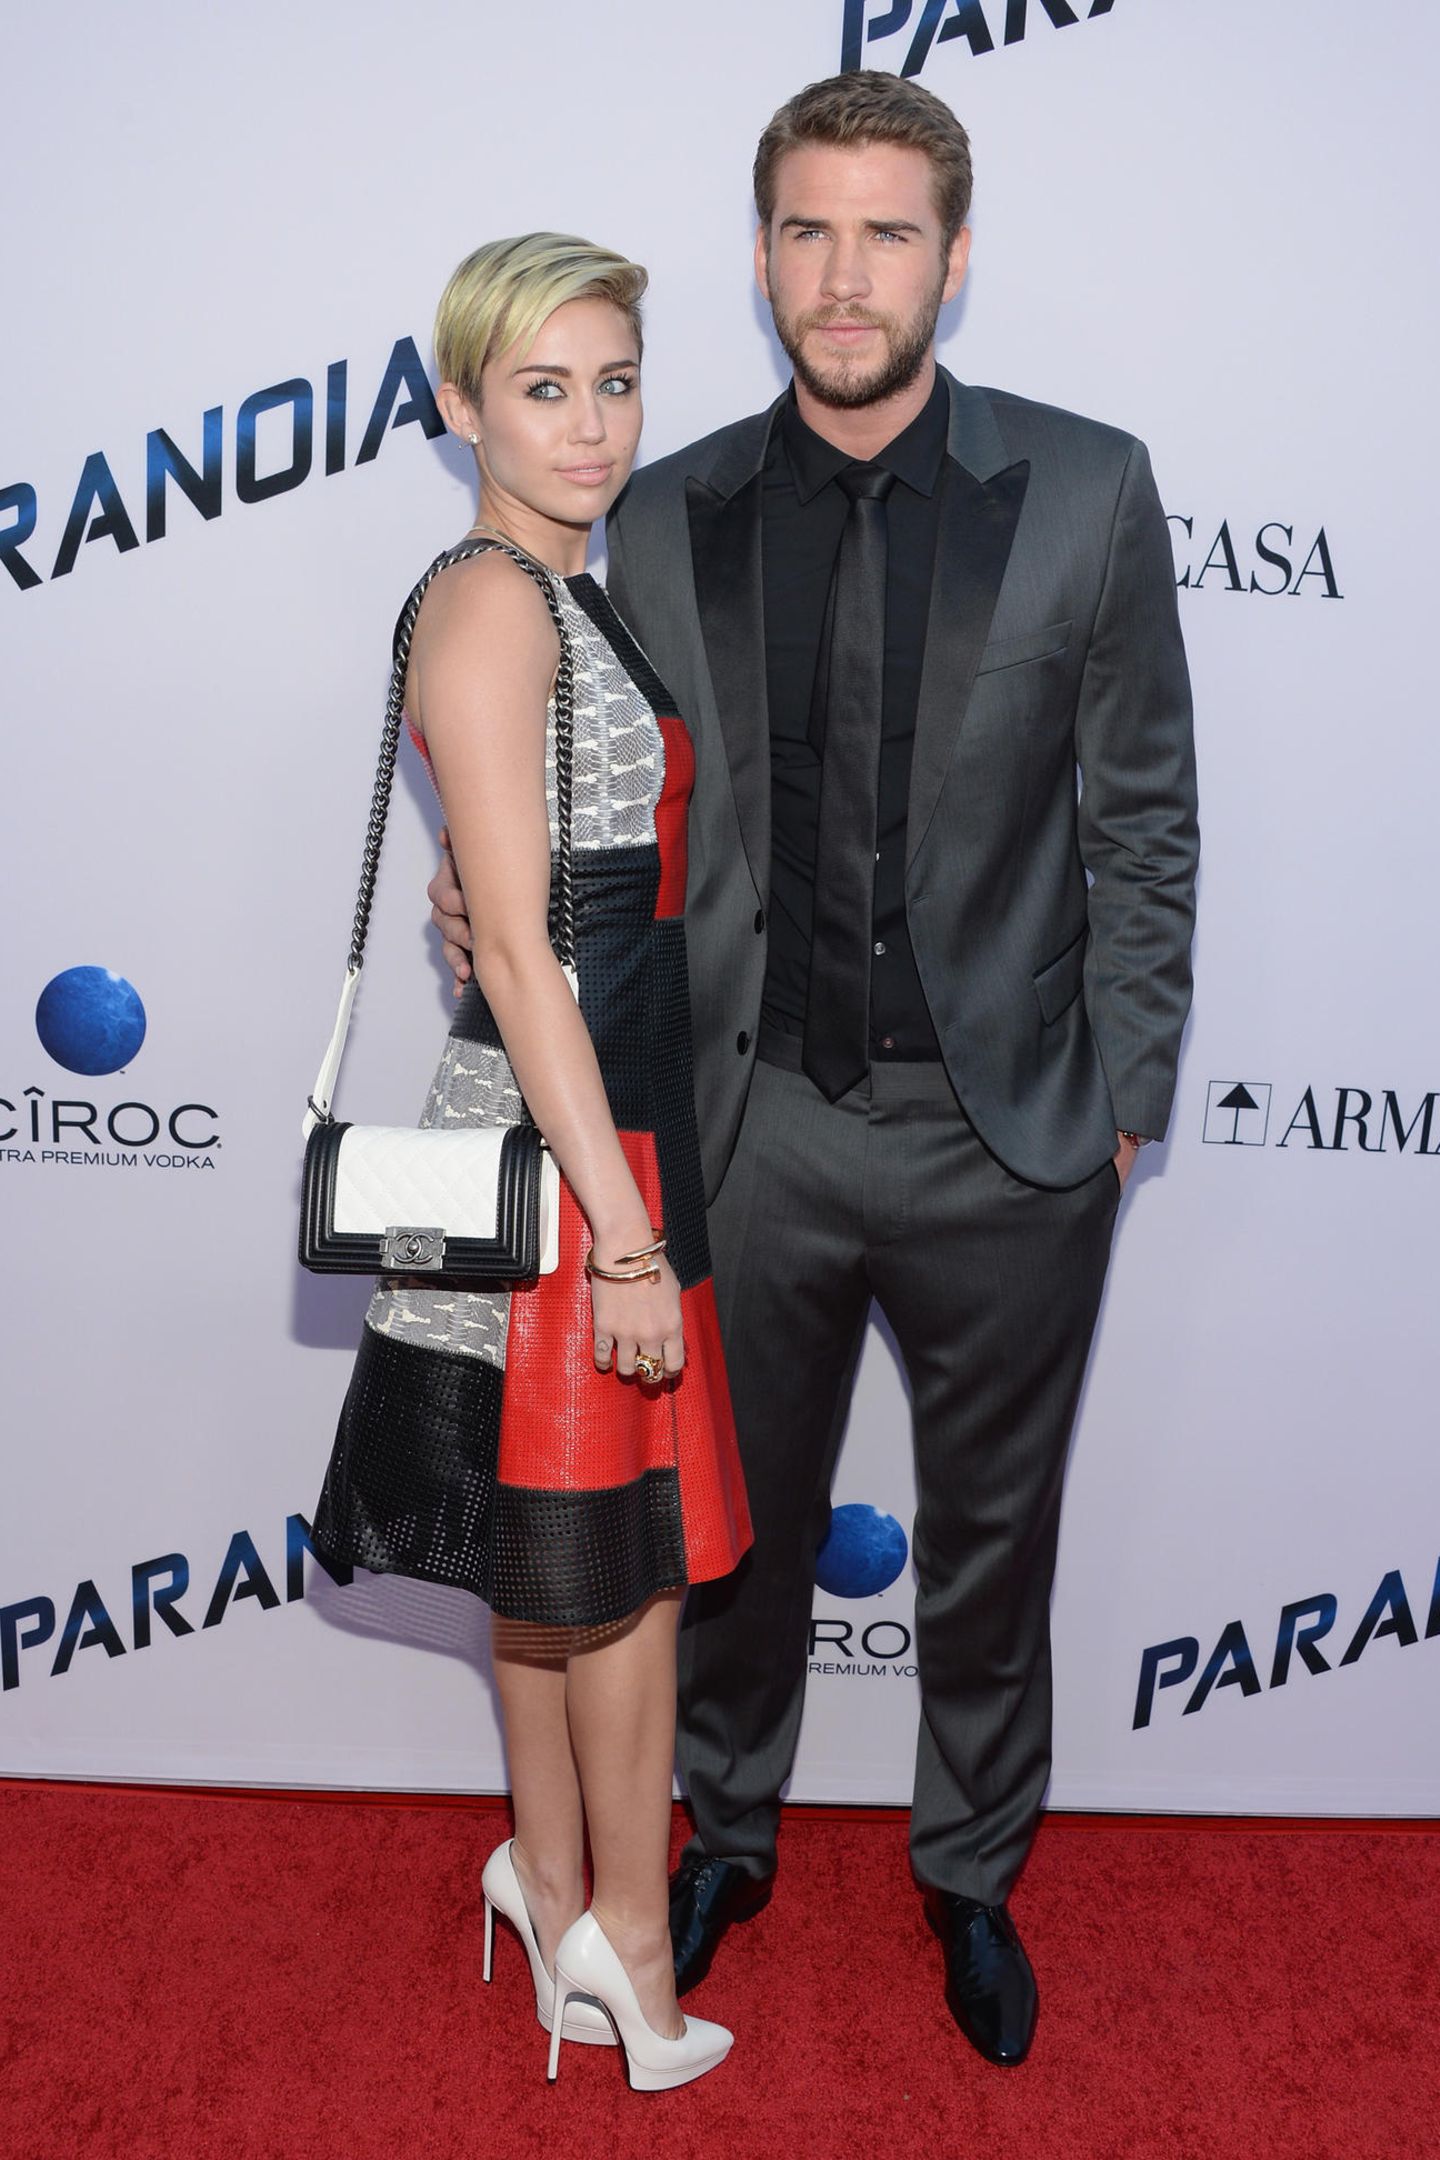 Vier Jahre vorher - im August 2013 - stehen Miley Cyrus und Liam Hemsworth zunächst für ein letztes Mal gemeinsam auf dem roten Teppich. Ihre Outfits geben dabei ein perfektes Match ab. Sonst scheint die Harmonie zwischen den beiden aber vorüber. Wenig später steht die Trennung an.